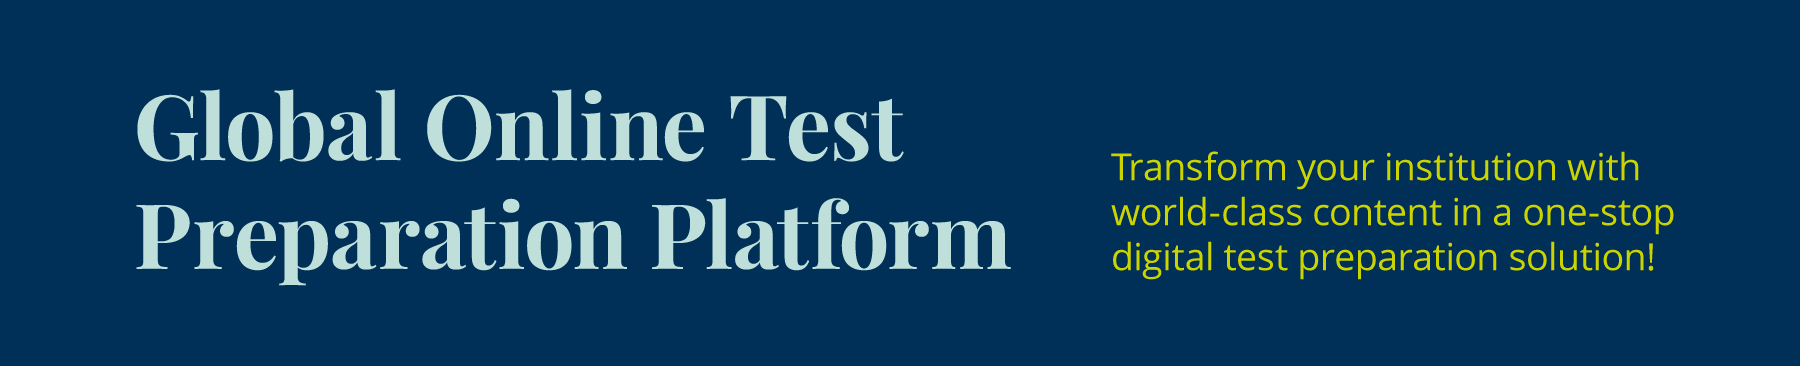 Global Online Tests Preparation Platform